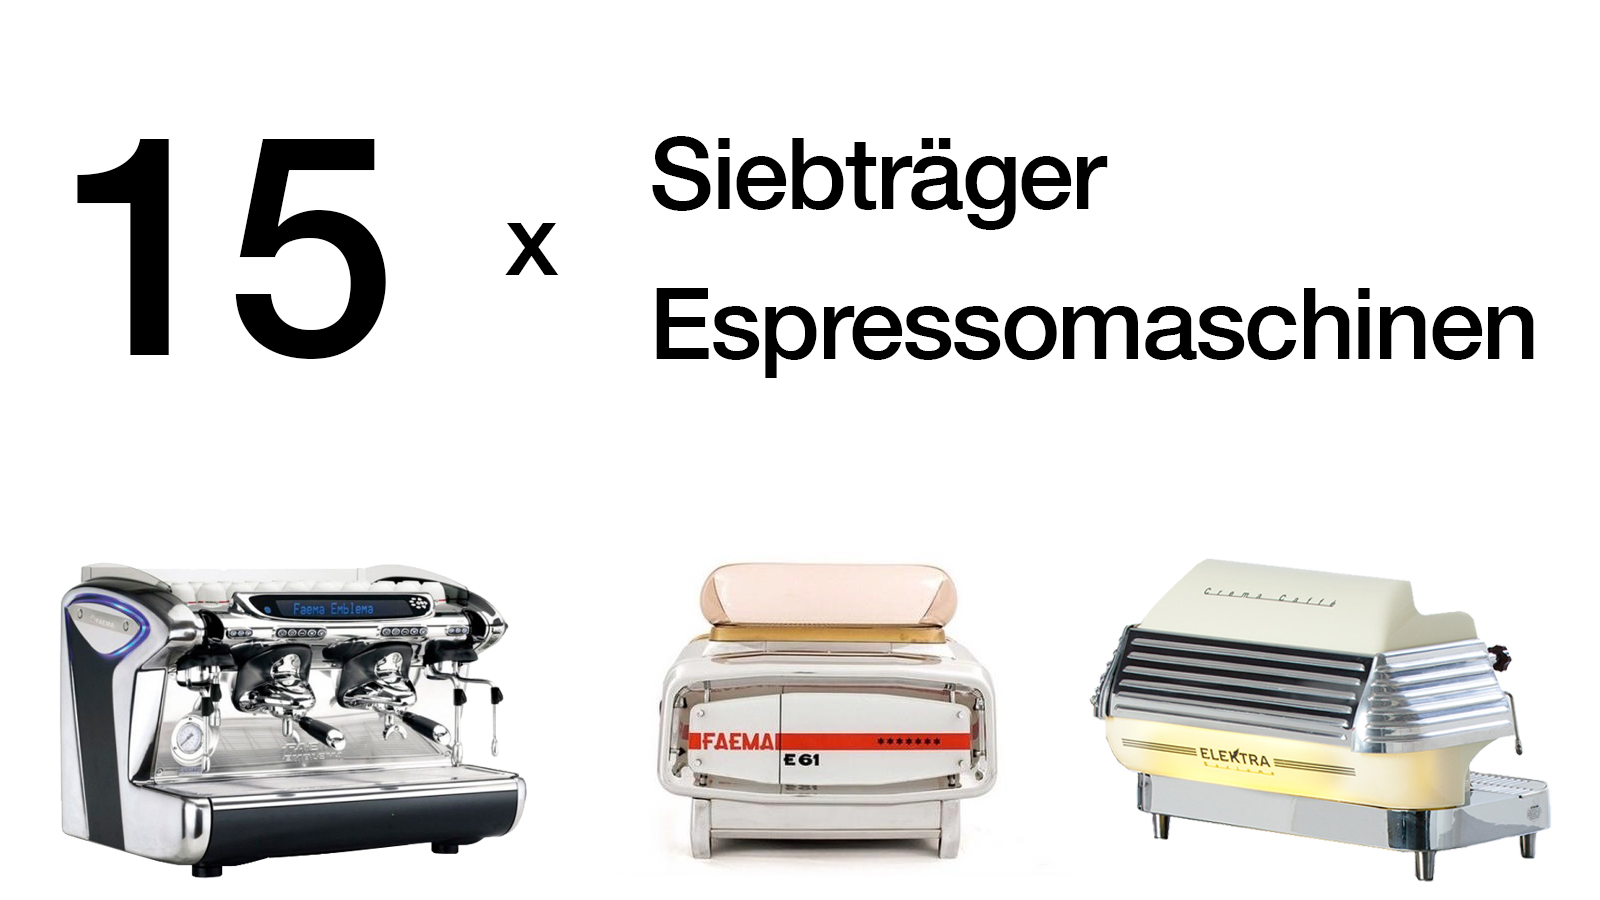 Drei Siebträger Espressomaschinen mobile Kaffeebar mit Beschriftung 15x Siebträger Espressomaschinen